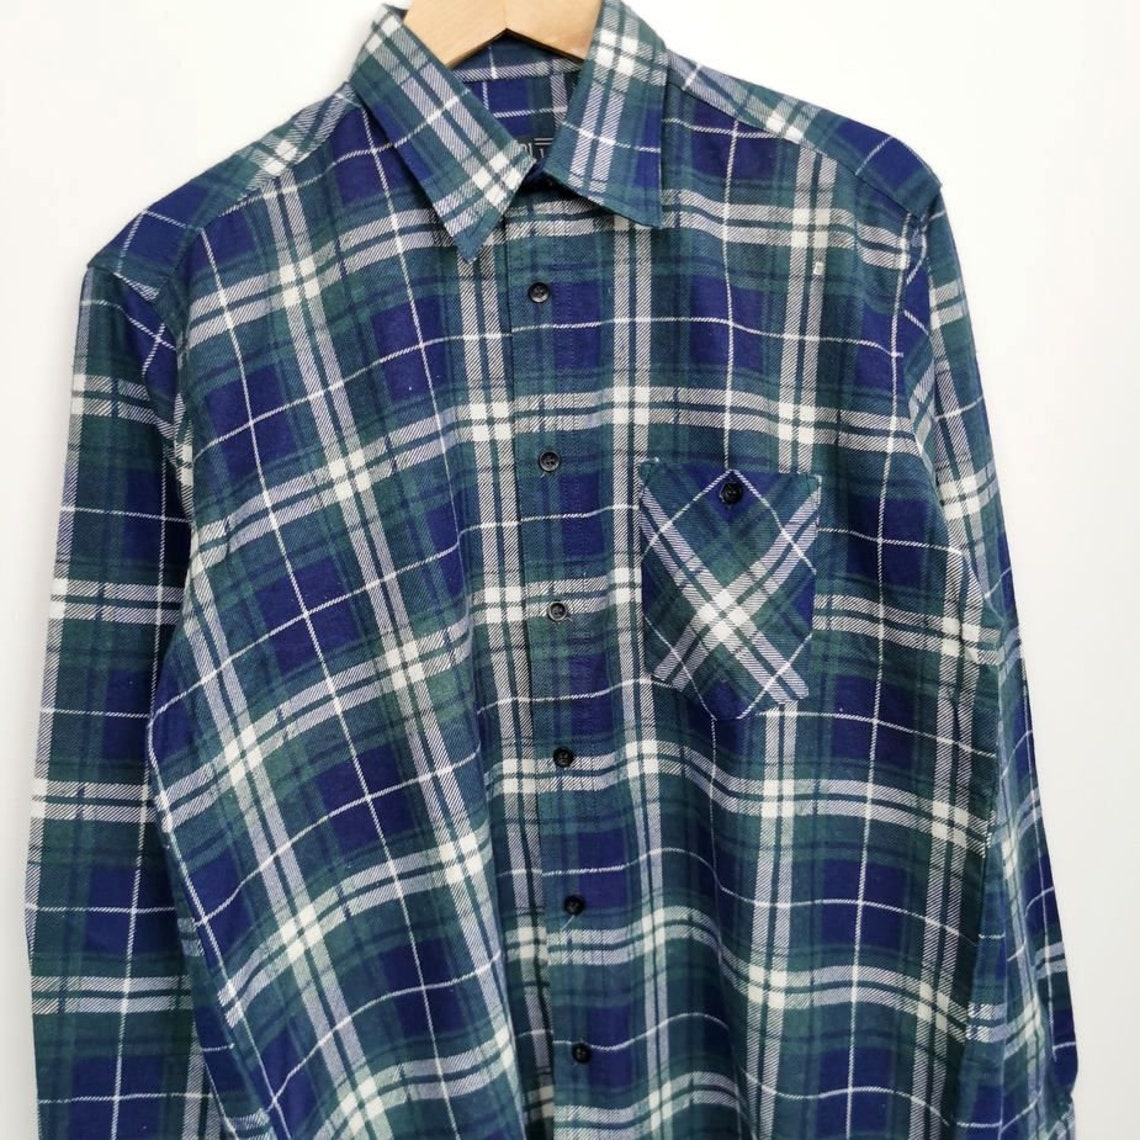 Pierre Leon plaid men's vintage shirt size M | Etsy